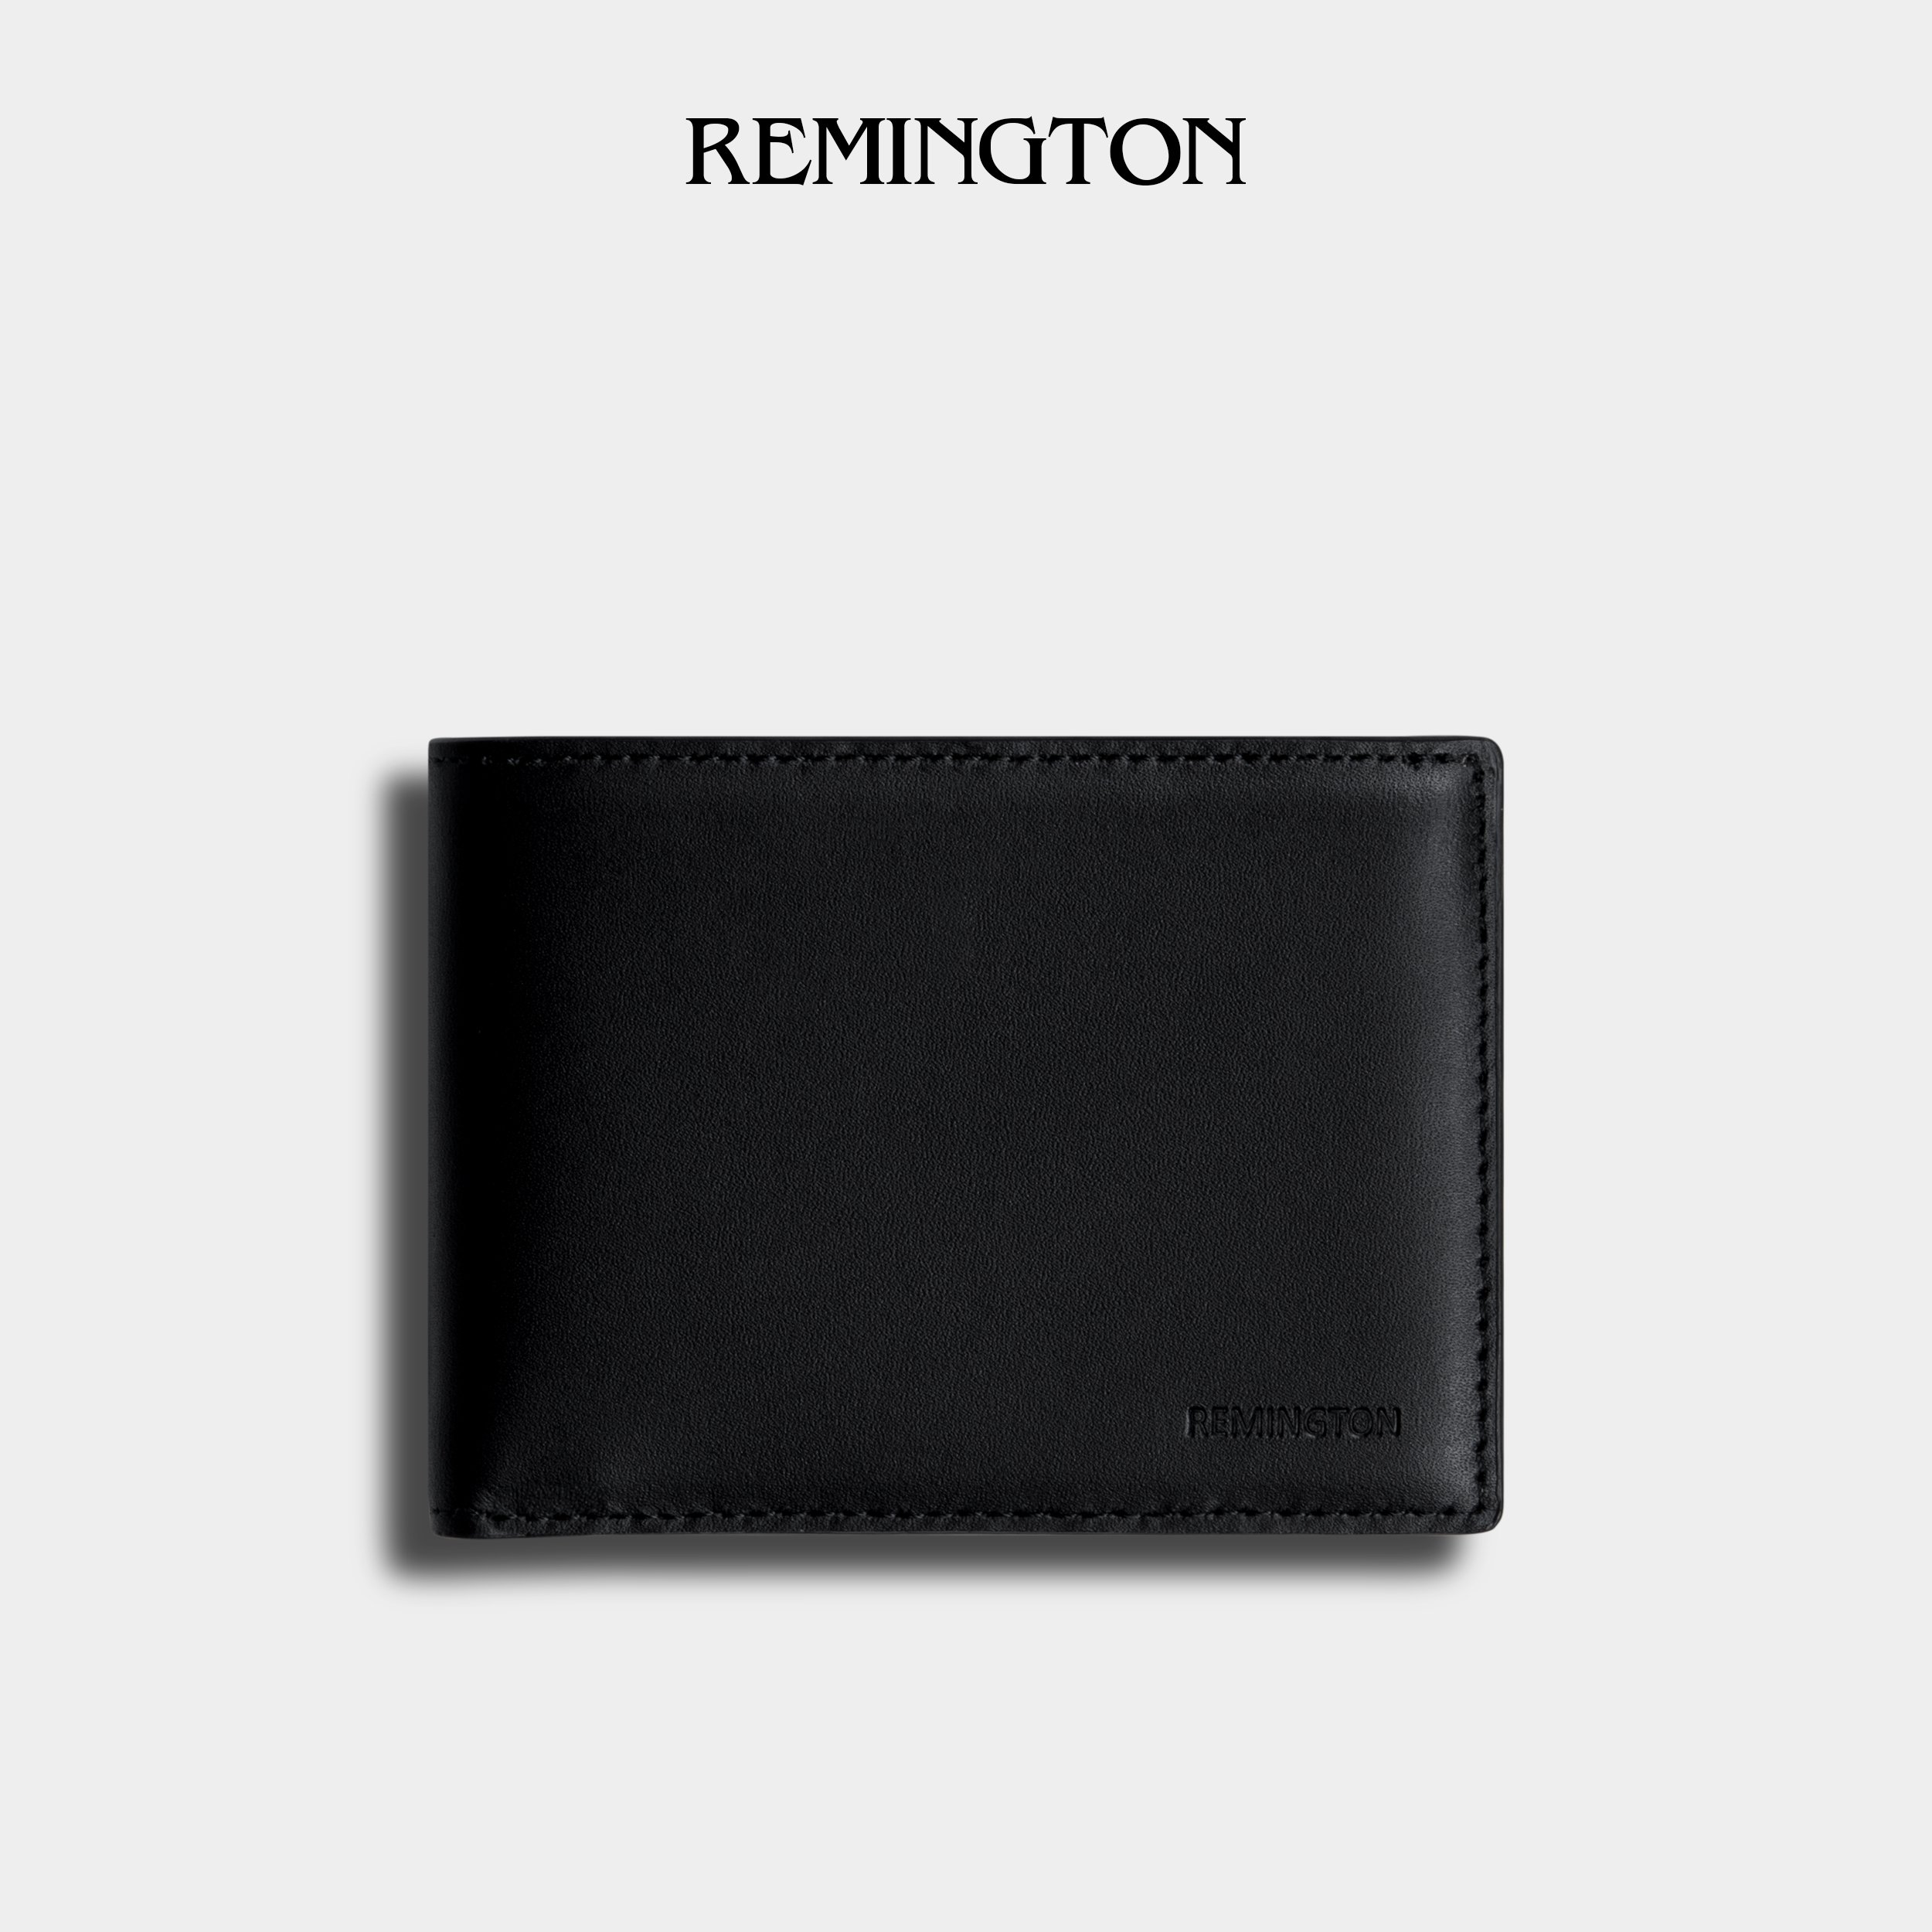 ví mini nam nhỏ gọn cầm tay Remington - Avalan Wallet tặng kèm hộp, thiệp và túi giấy để làm quà tặng cho người yêu hoặc bố